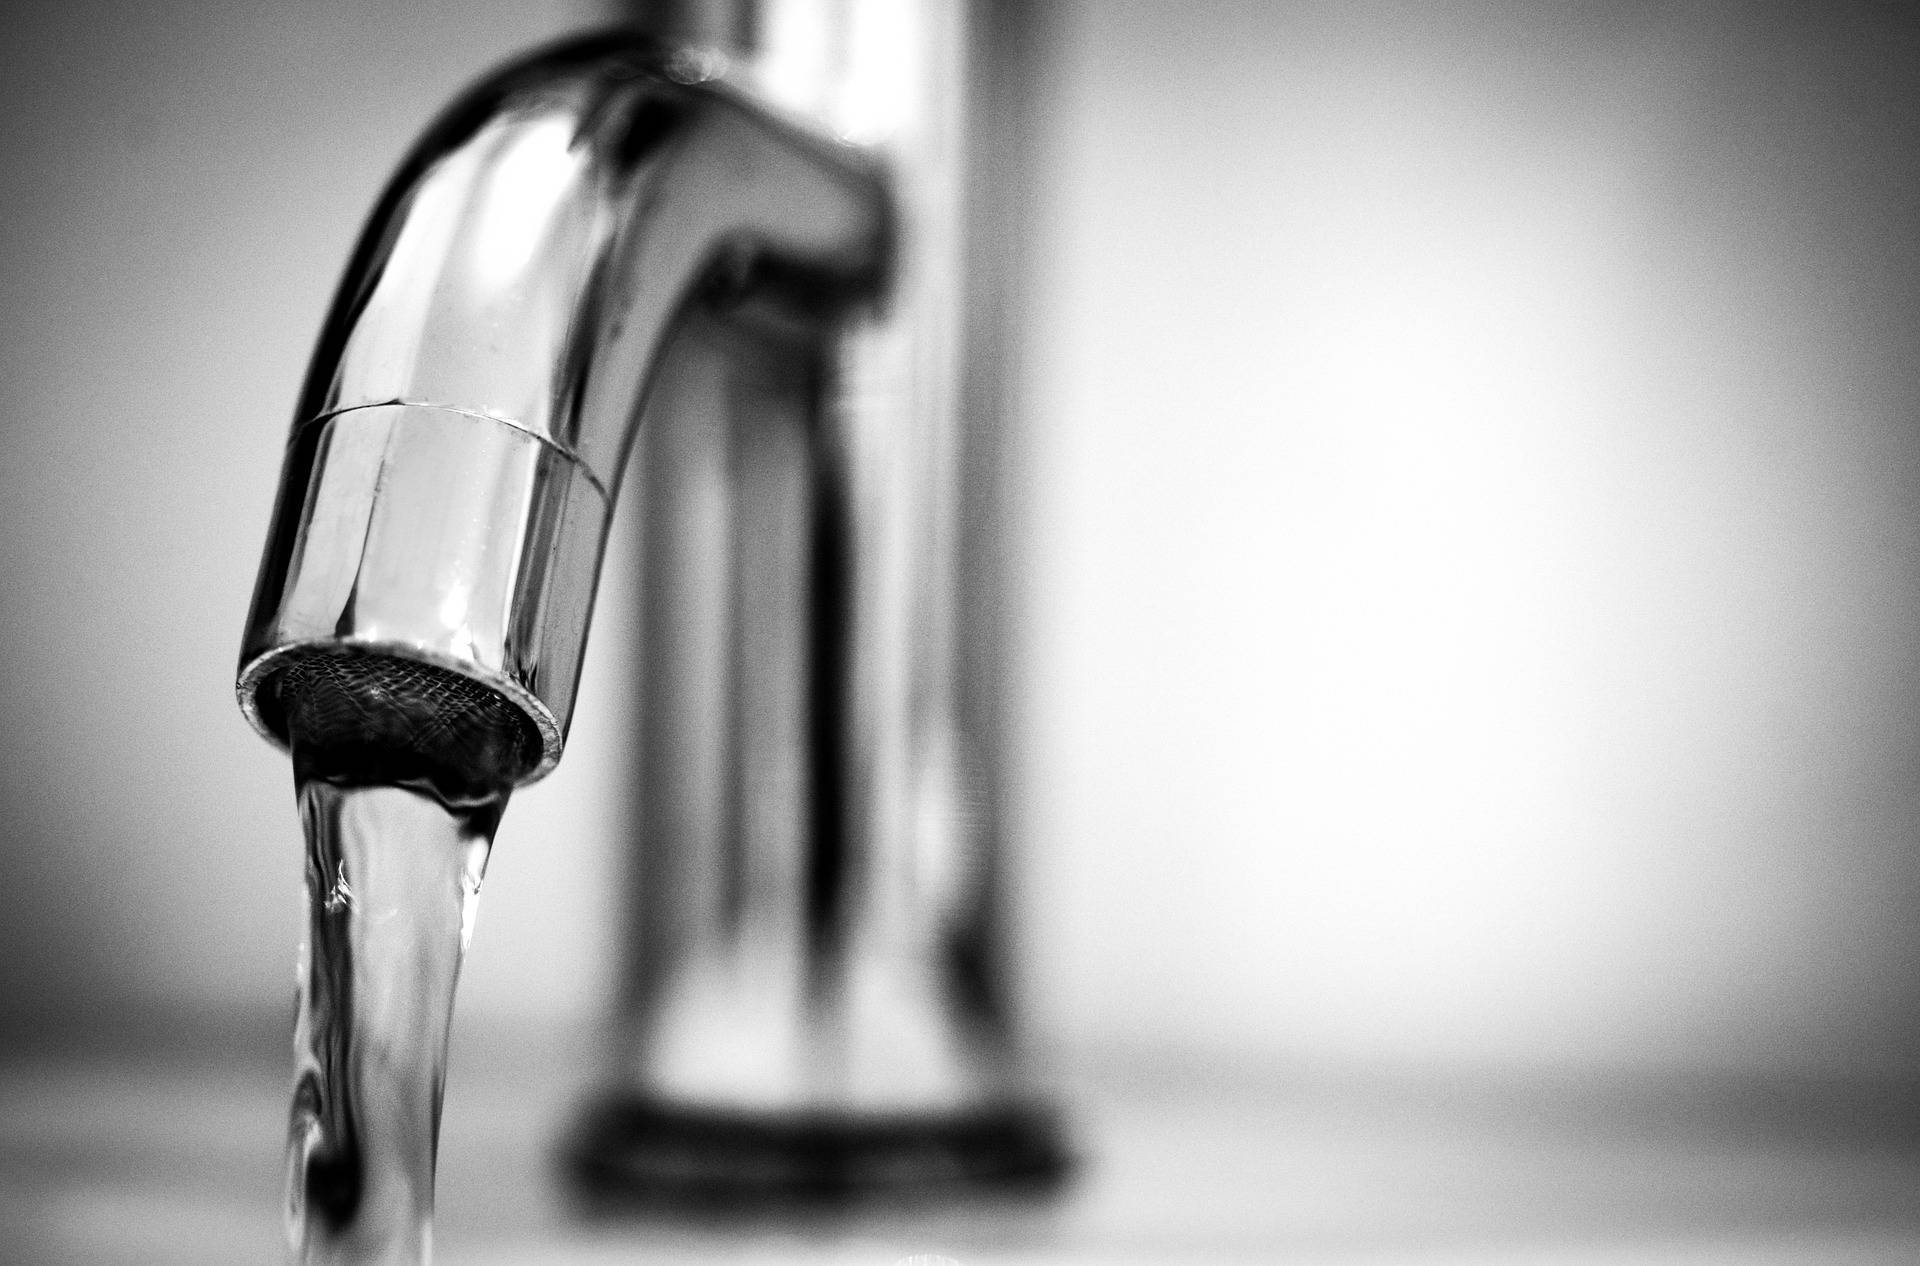 Законно ли отключать горячую воду? — вопросы от читателей